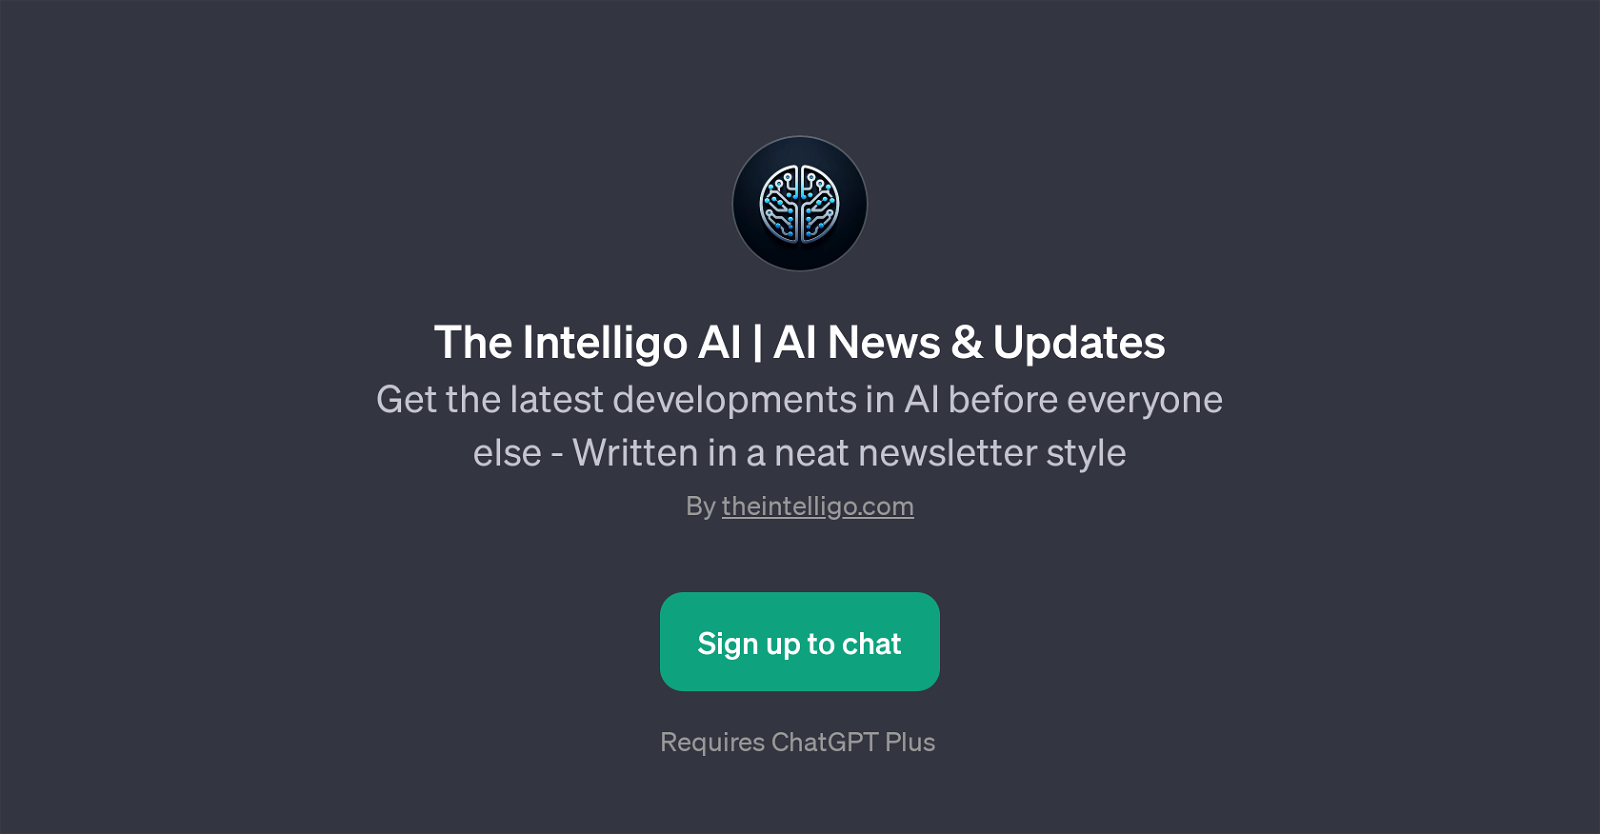 The Intelligo AI website